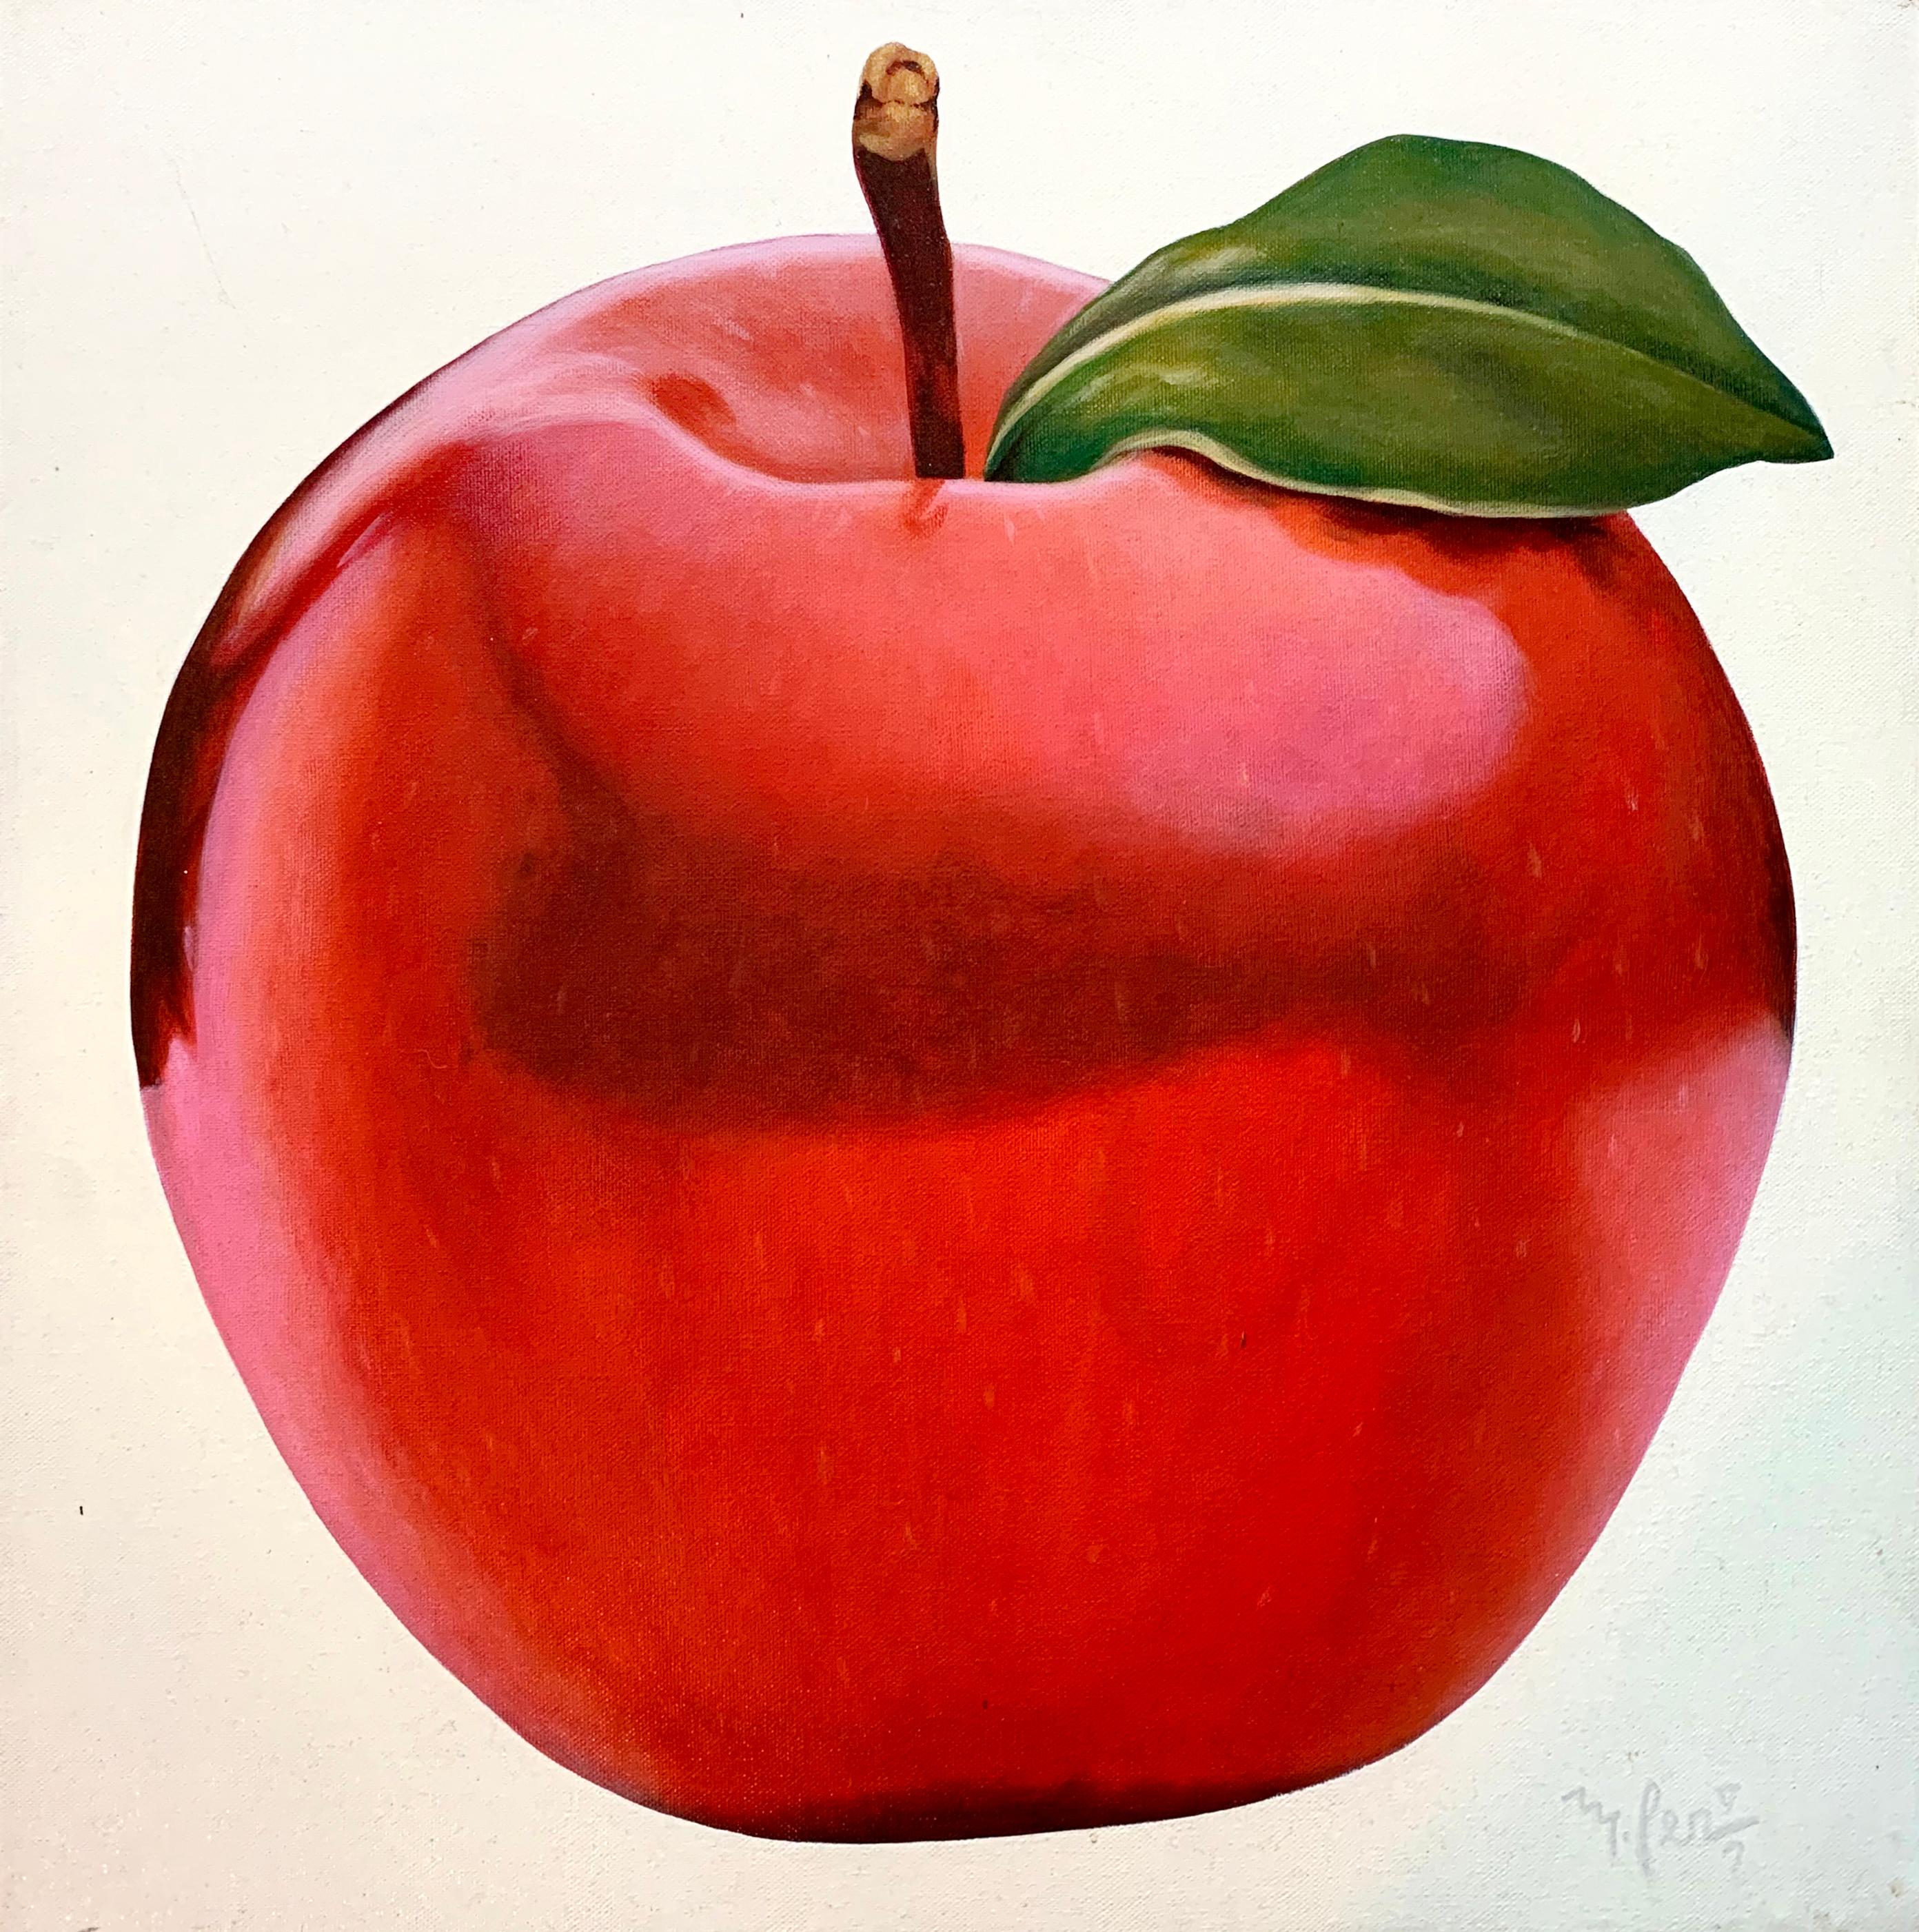 Apfel, fotorealistisches Ölgemälde auf Leinwand von Manuel Servin